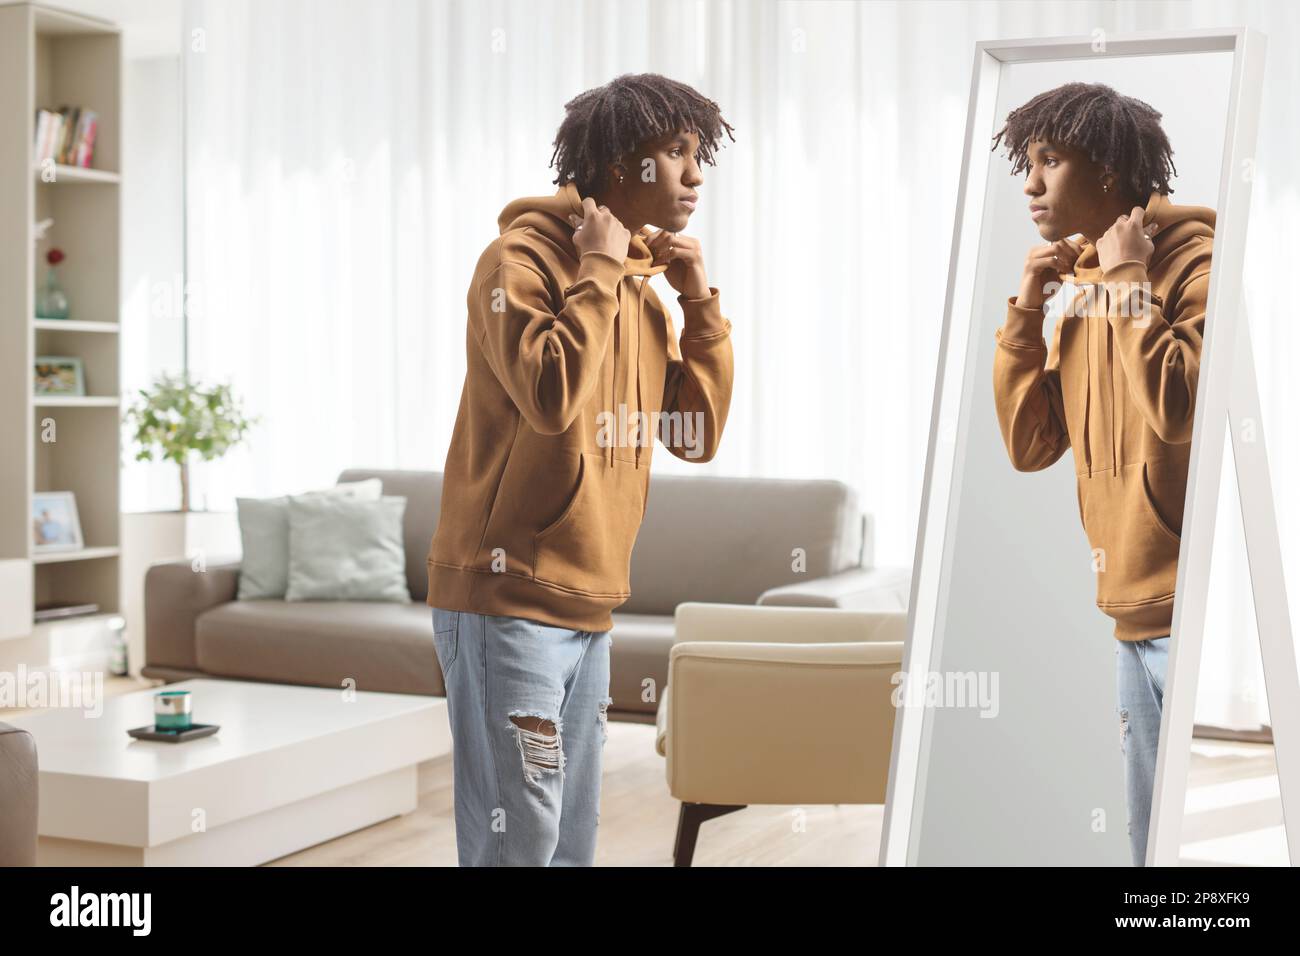 Ein junger afroamerikanischer Mann, der zu Hause vor einem Spiegel steht Stockfoto